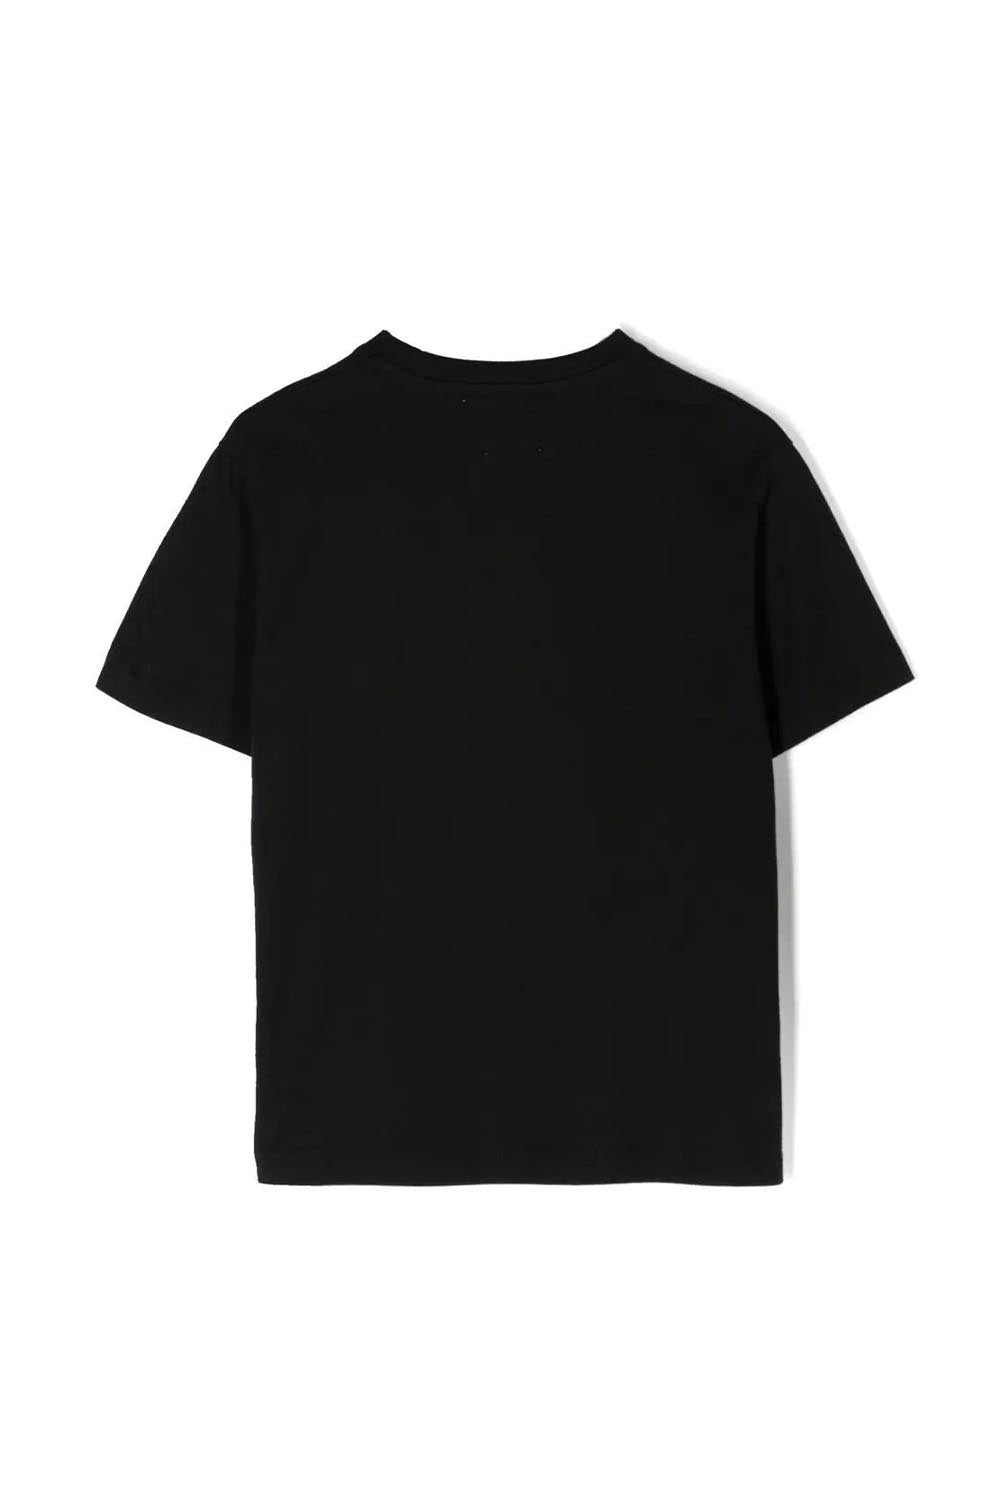 Monsterlisa T-Shirt Short Sleeve - Maison7